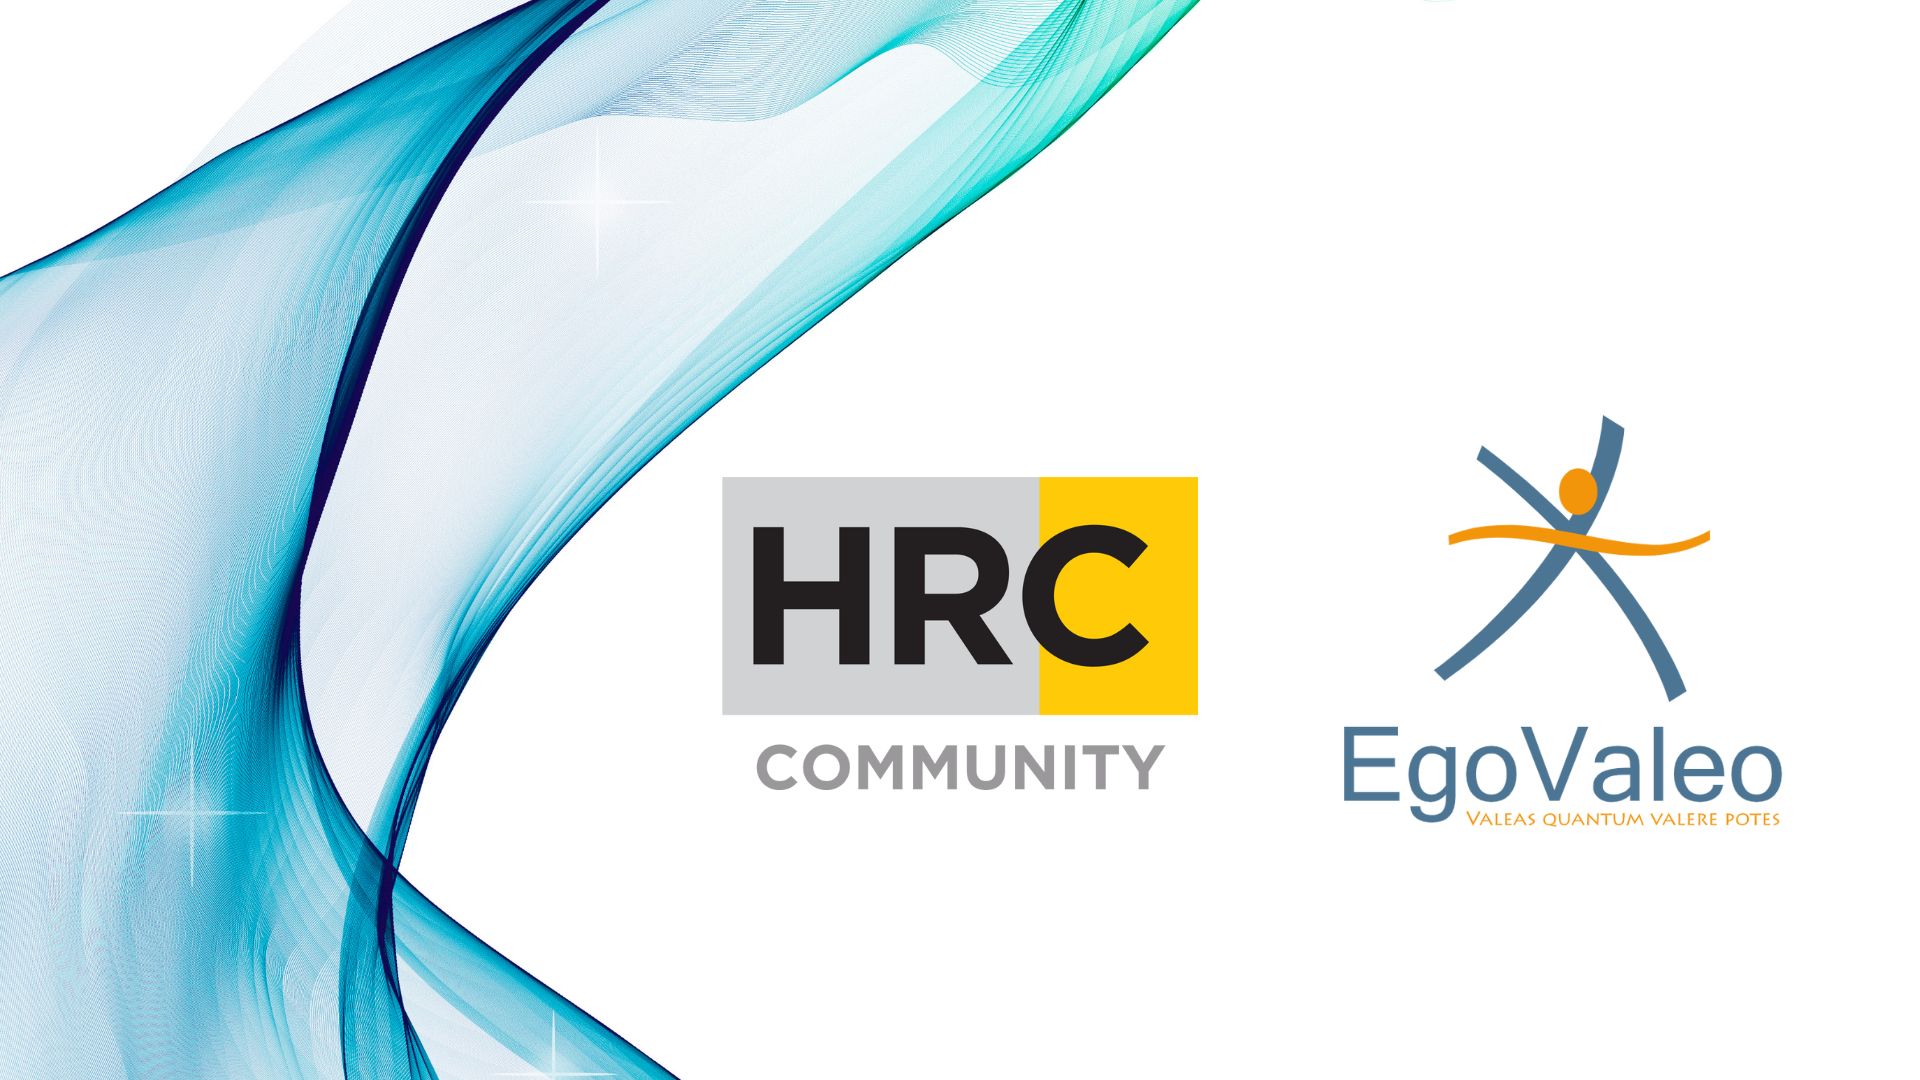 HRC Community: EgoValeo diventa sponsor